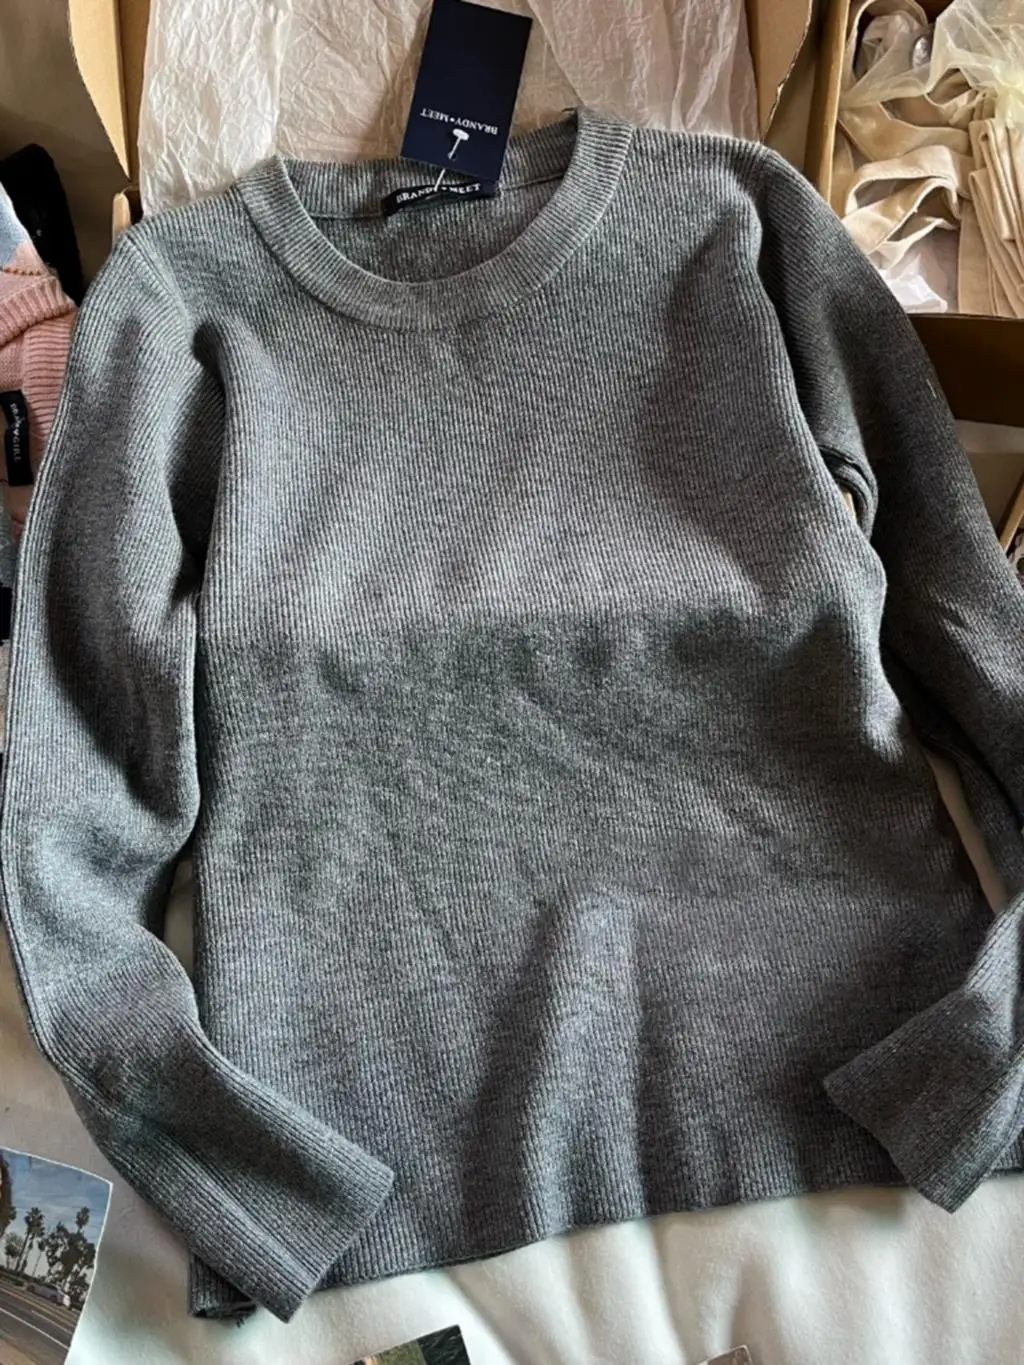 Grau gestrickt Basic Slim Sweater Frau Herbst Rundhals ausschnitt Langarm Pullover Top für Damen bekleidung lässig einfache Baumwolle Pullover